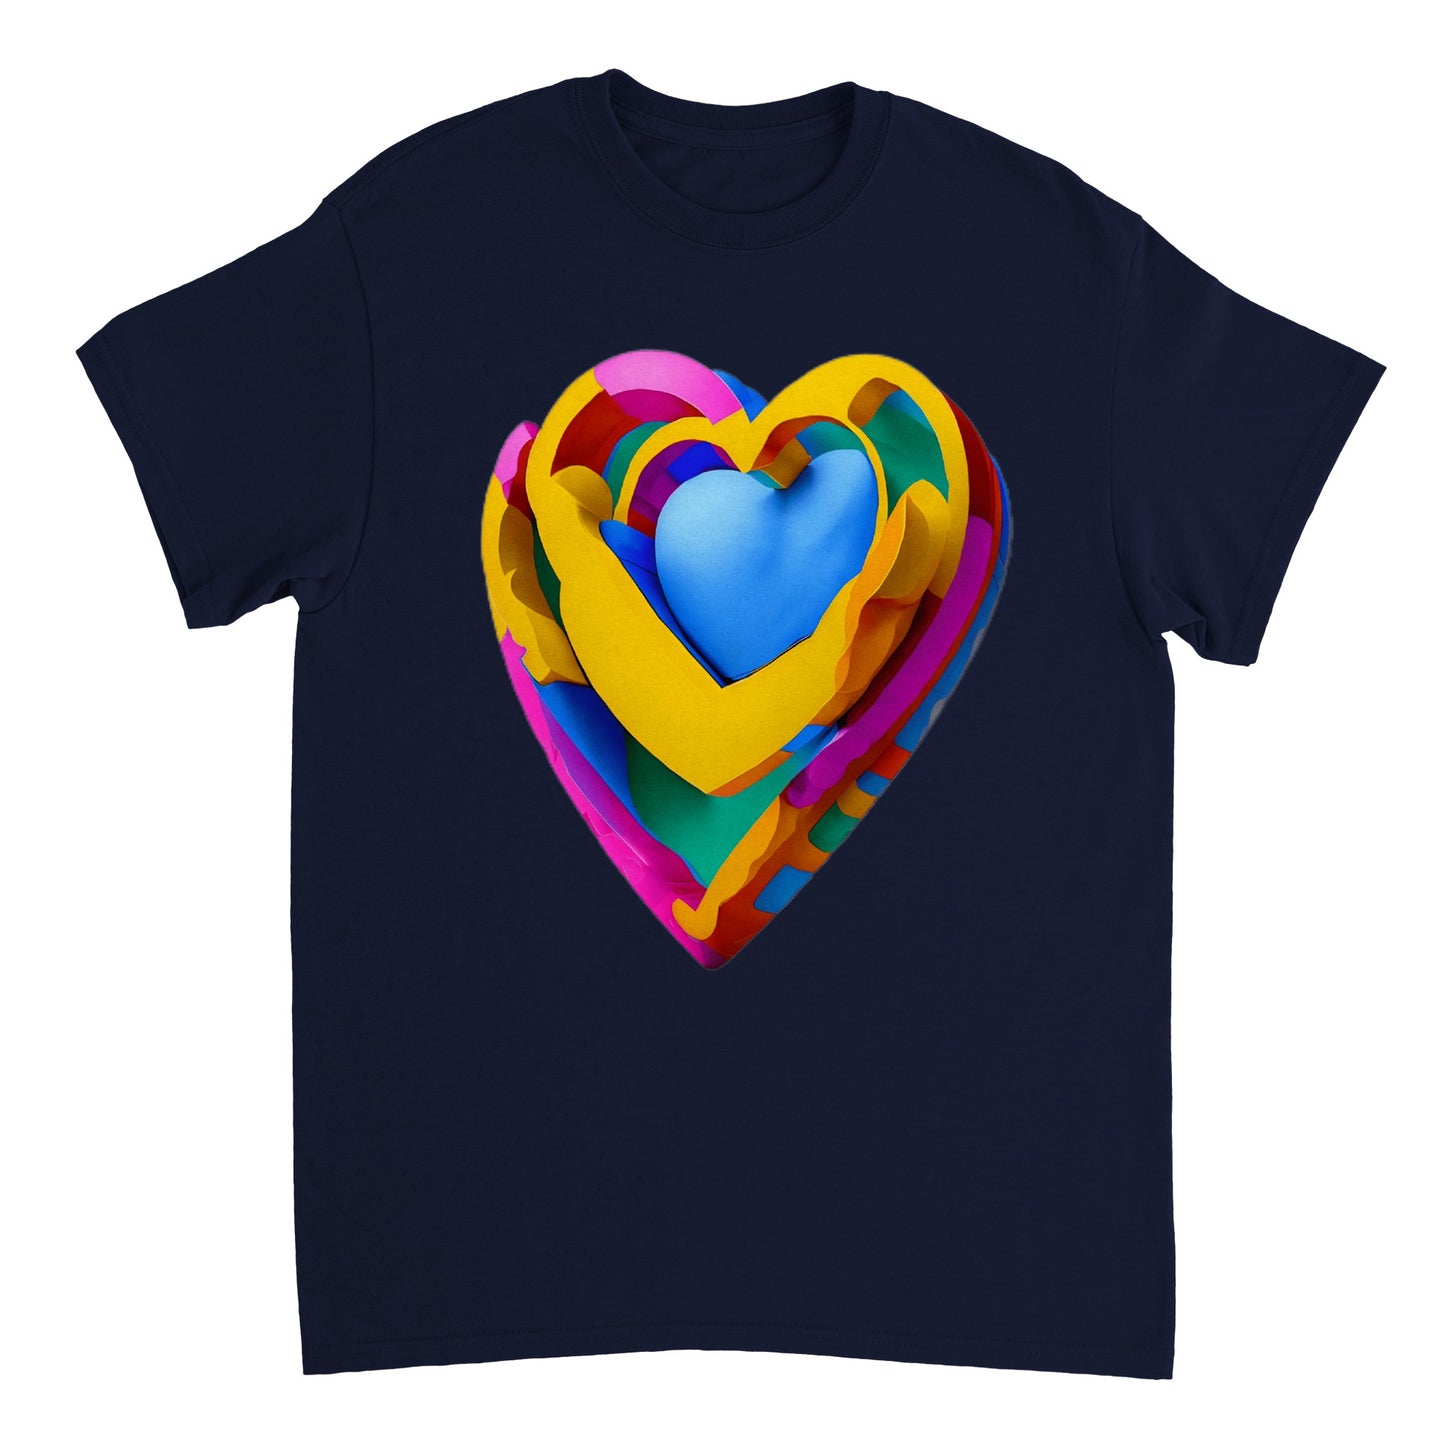 Love Heart - Heavyweight Unisex Crewneck T-shirt 12